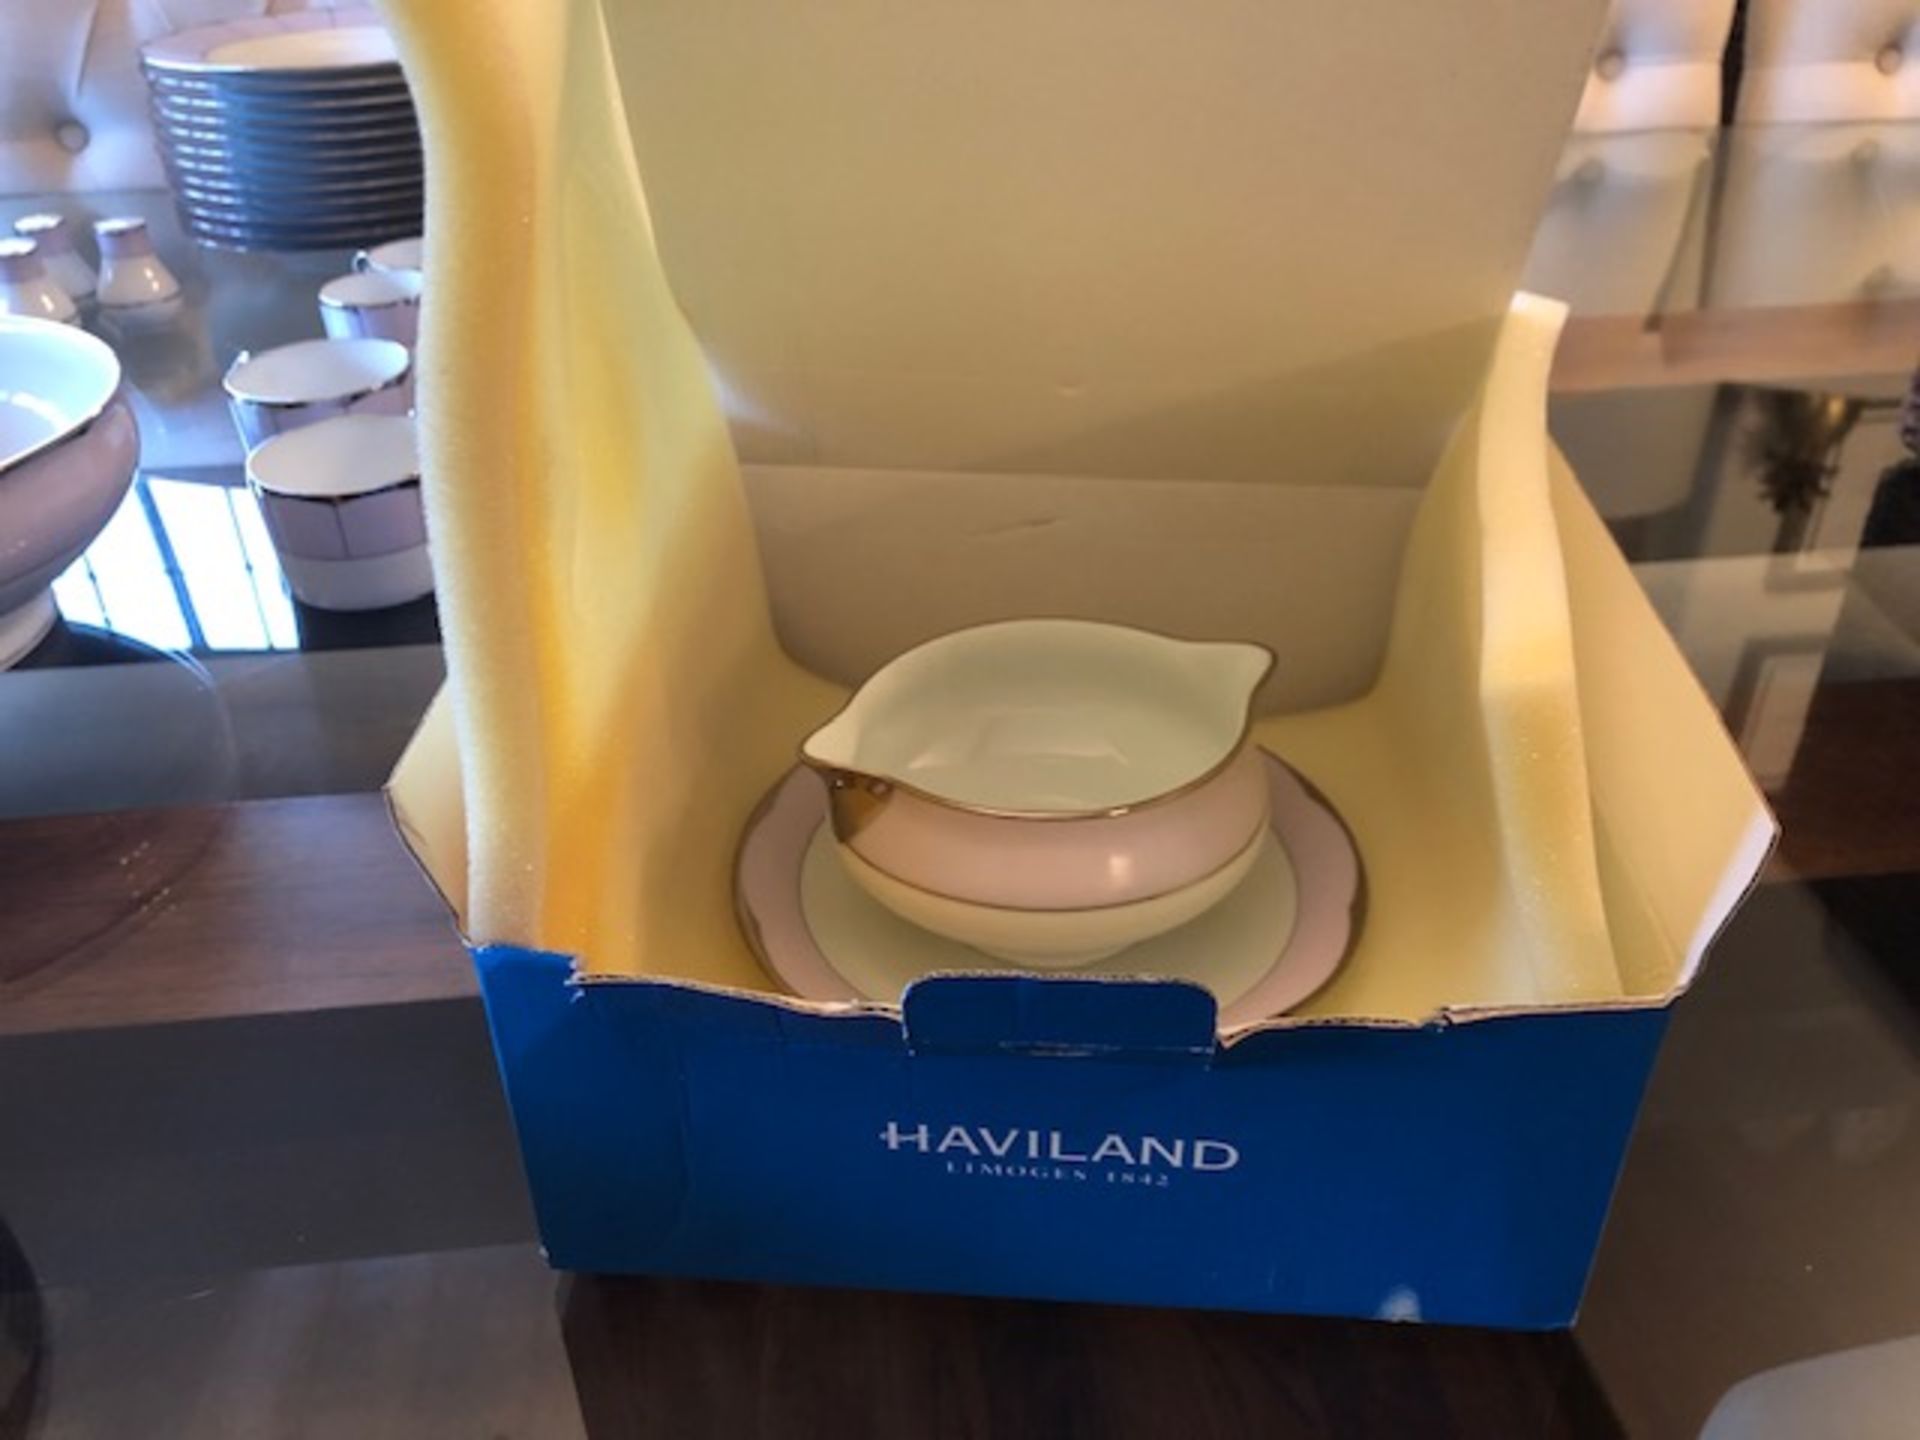 Havilland Dinner Service 'Haviland Limoges Illusion Lavender' - Image 2 of 26